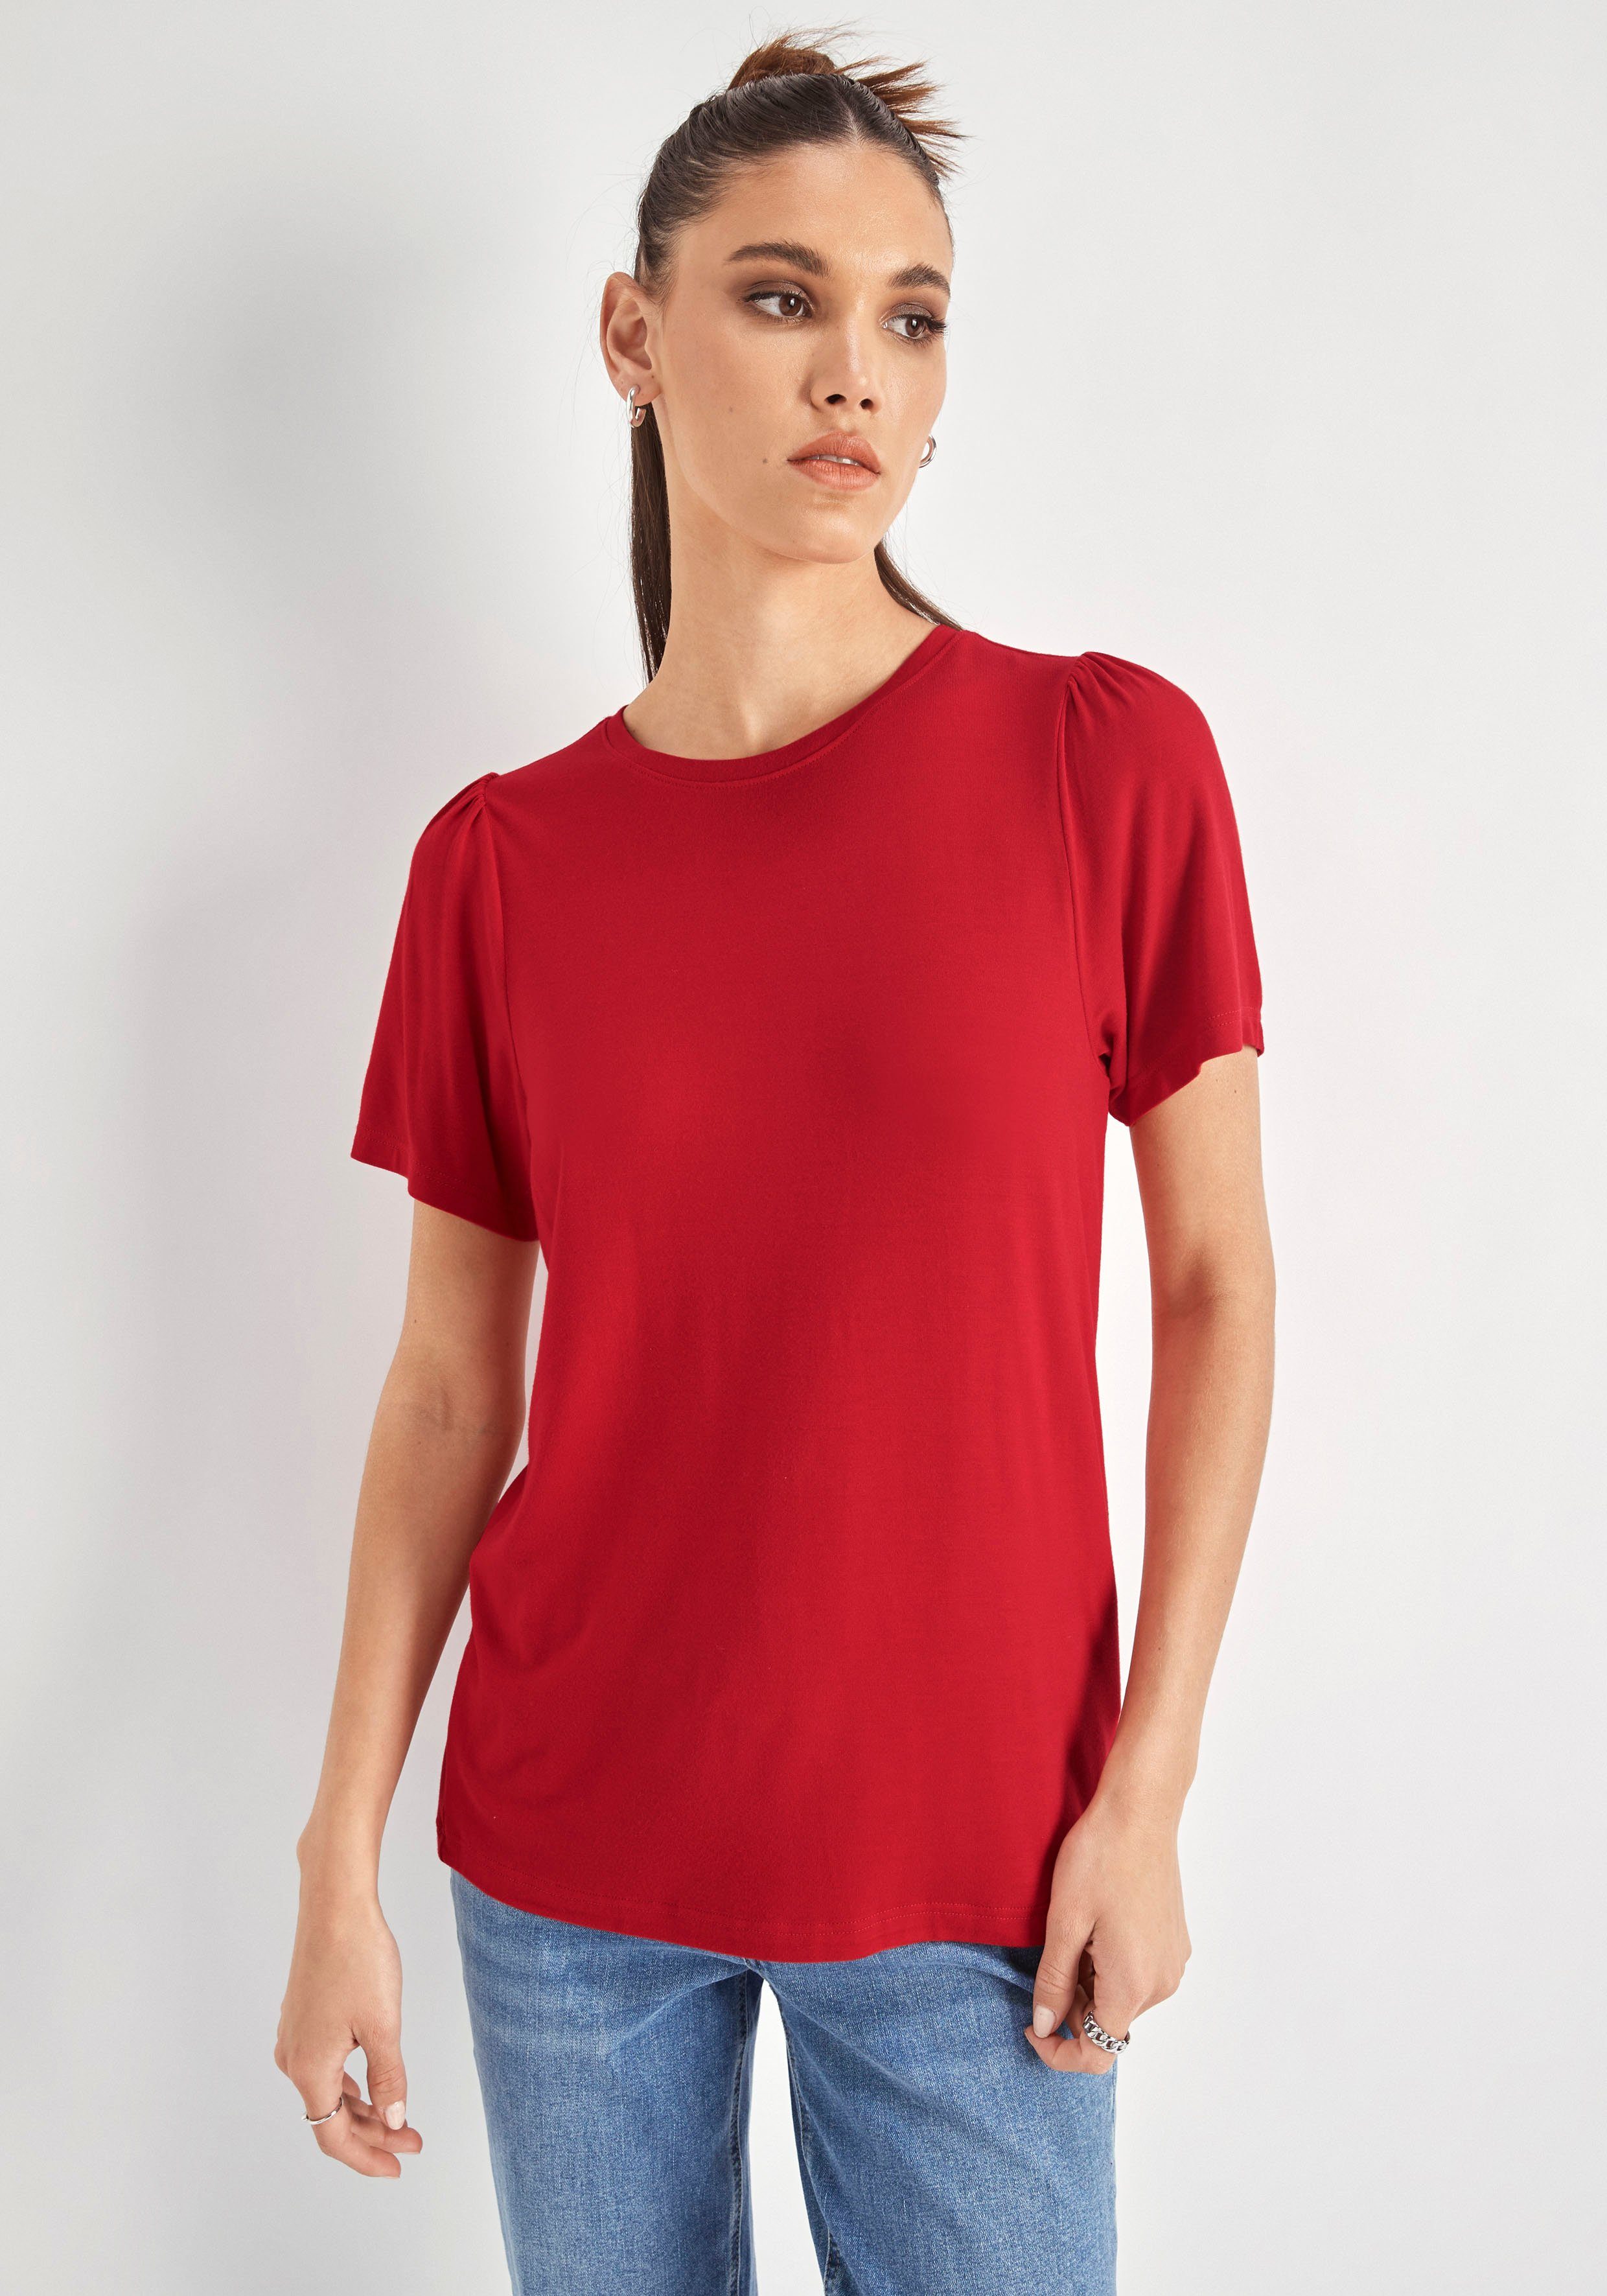 HECHTER PARIS T-Shirt mit Puffschultern rot